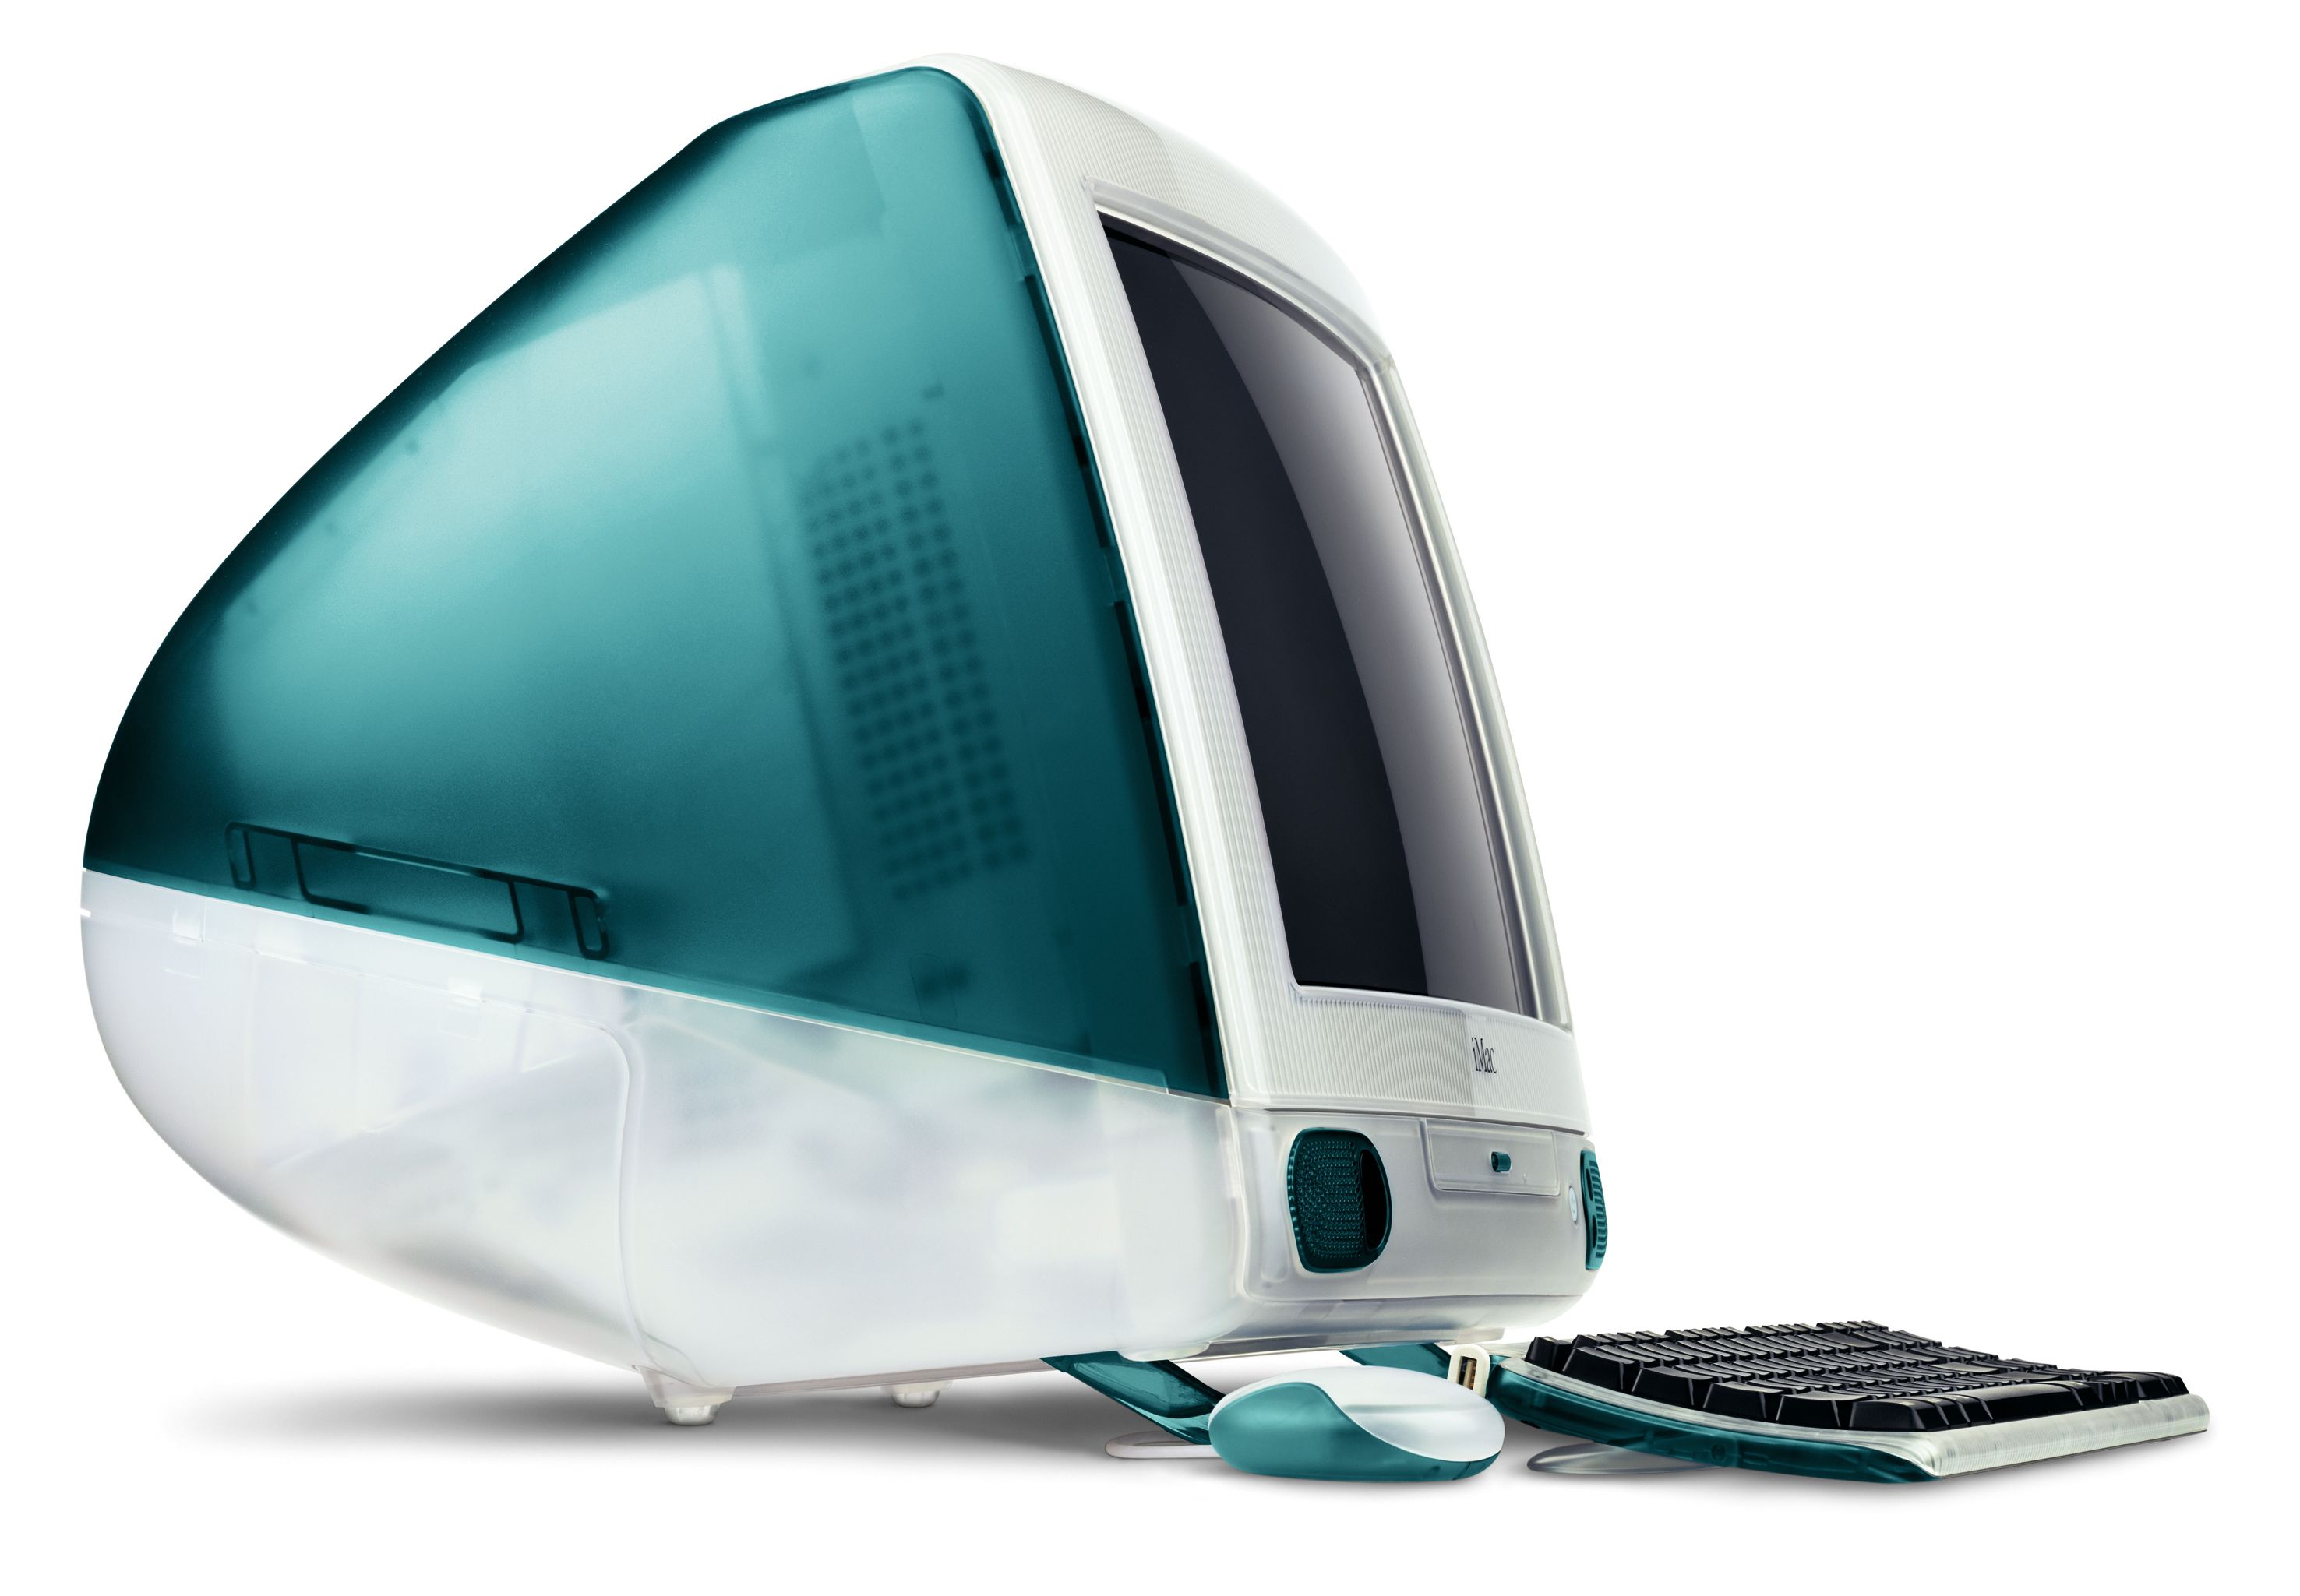 Юбилей! 20 лет назад показали первый iMac